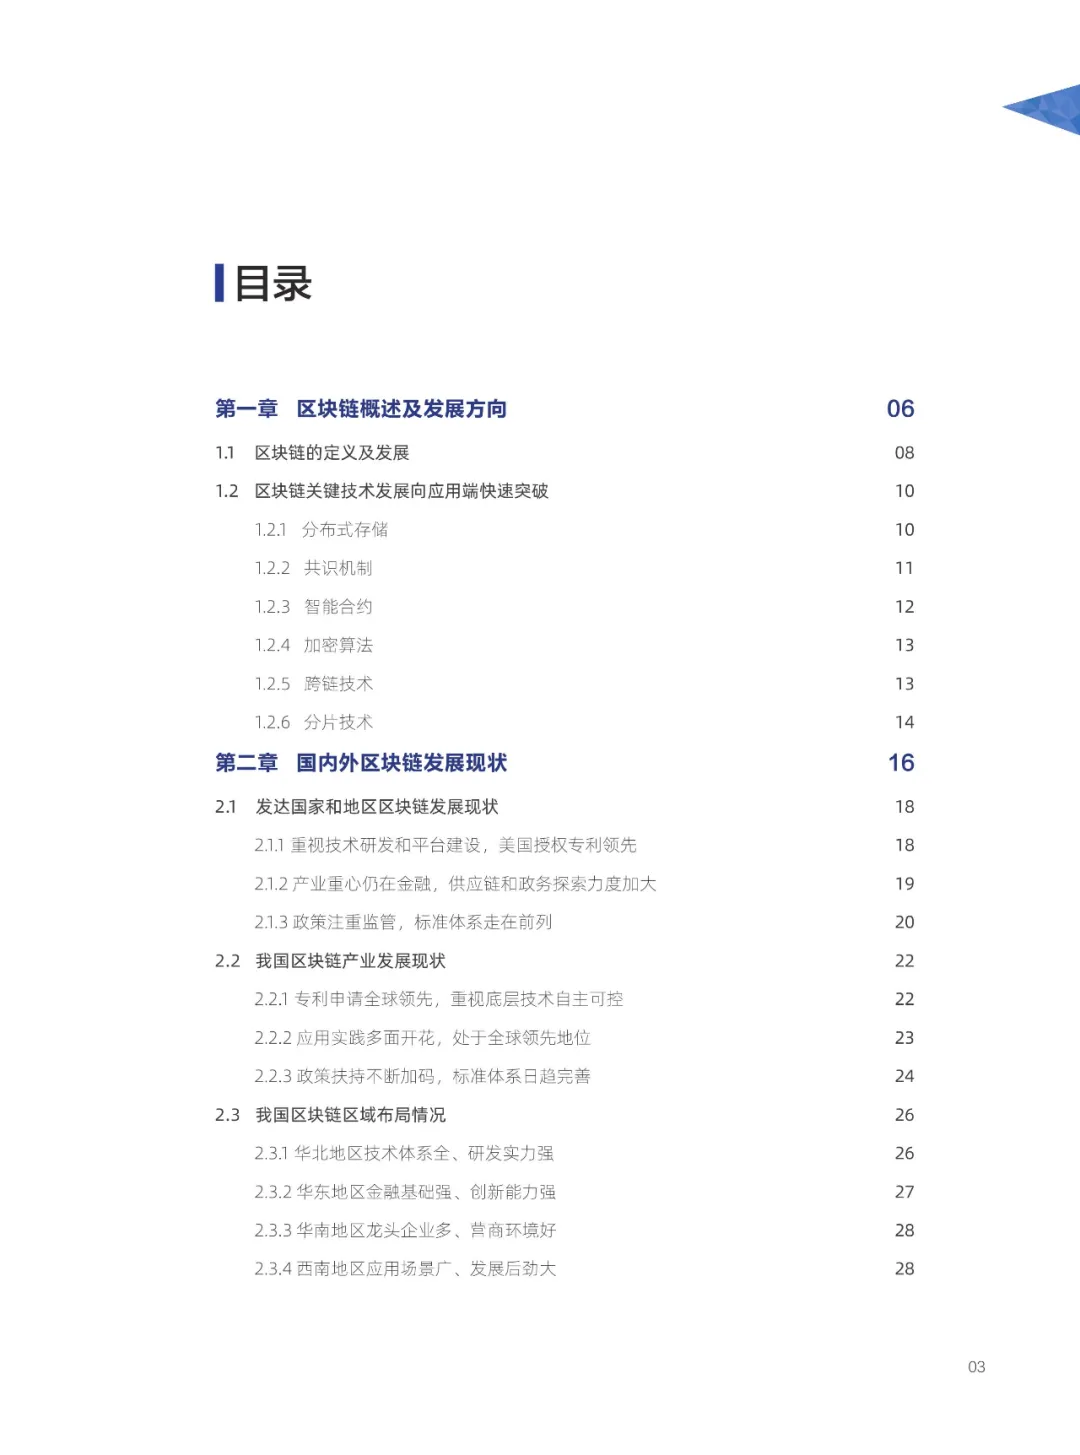 信任经济的崛起——2020中国区块链发展报告_数字世界_05